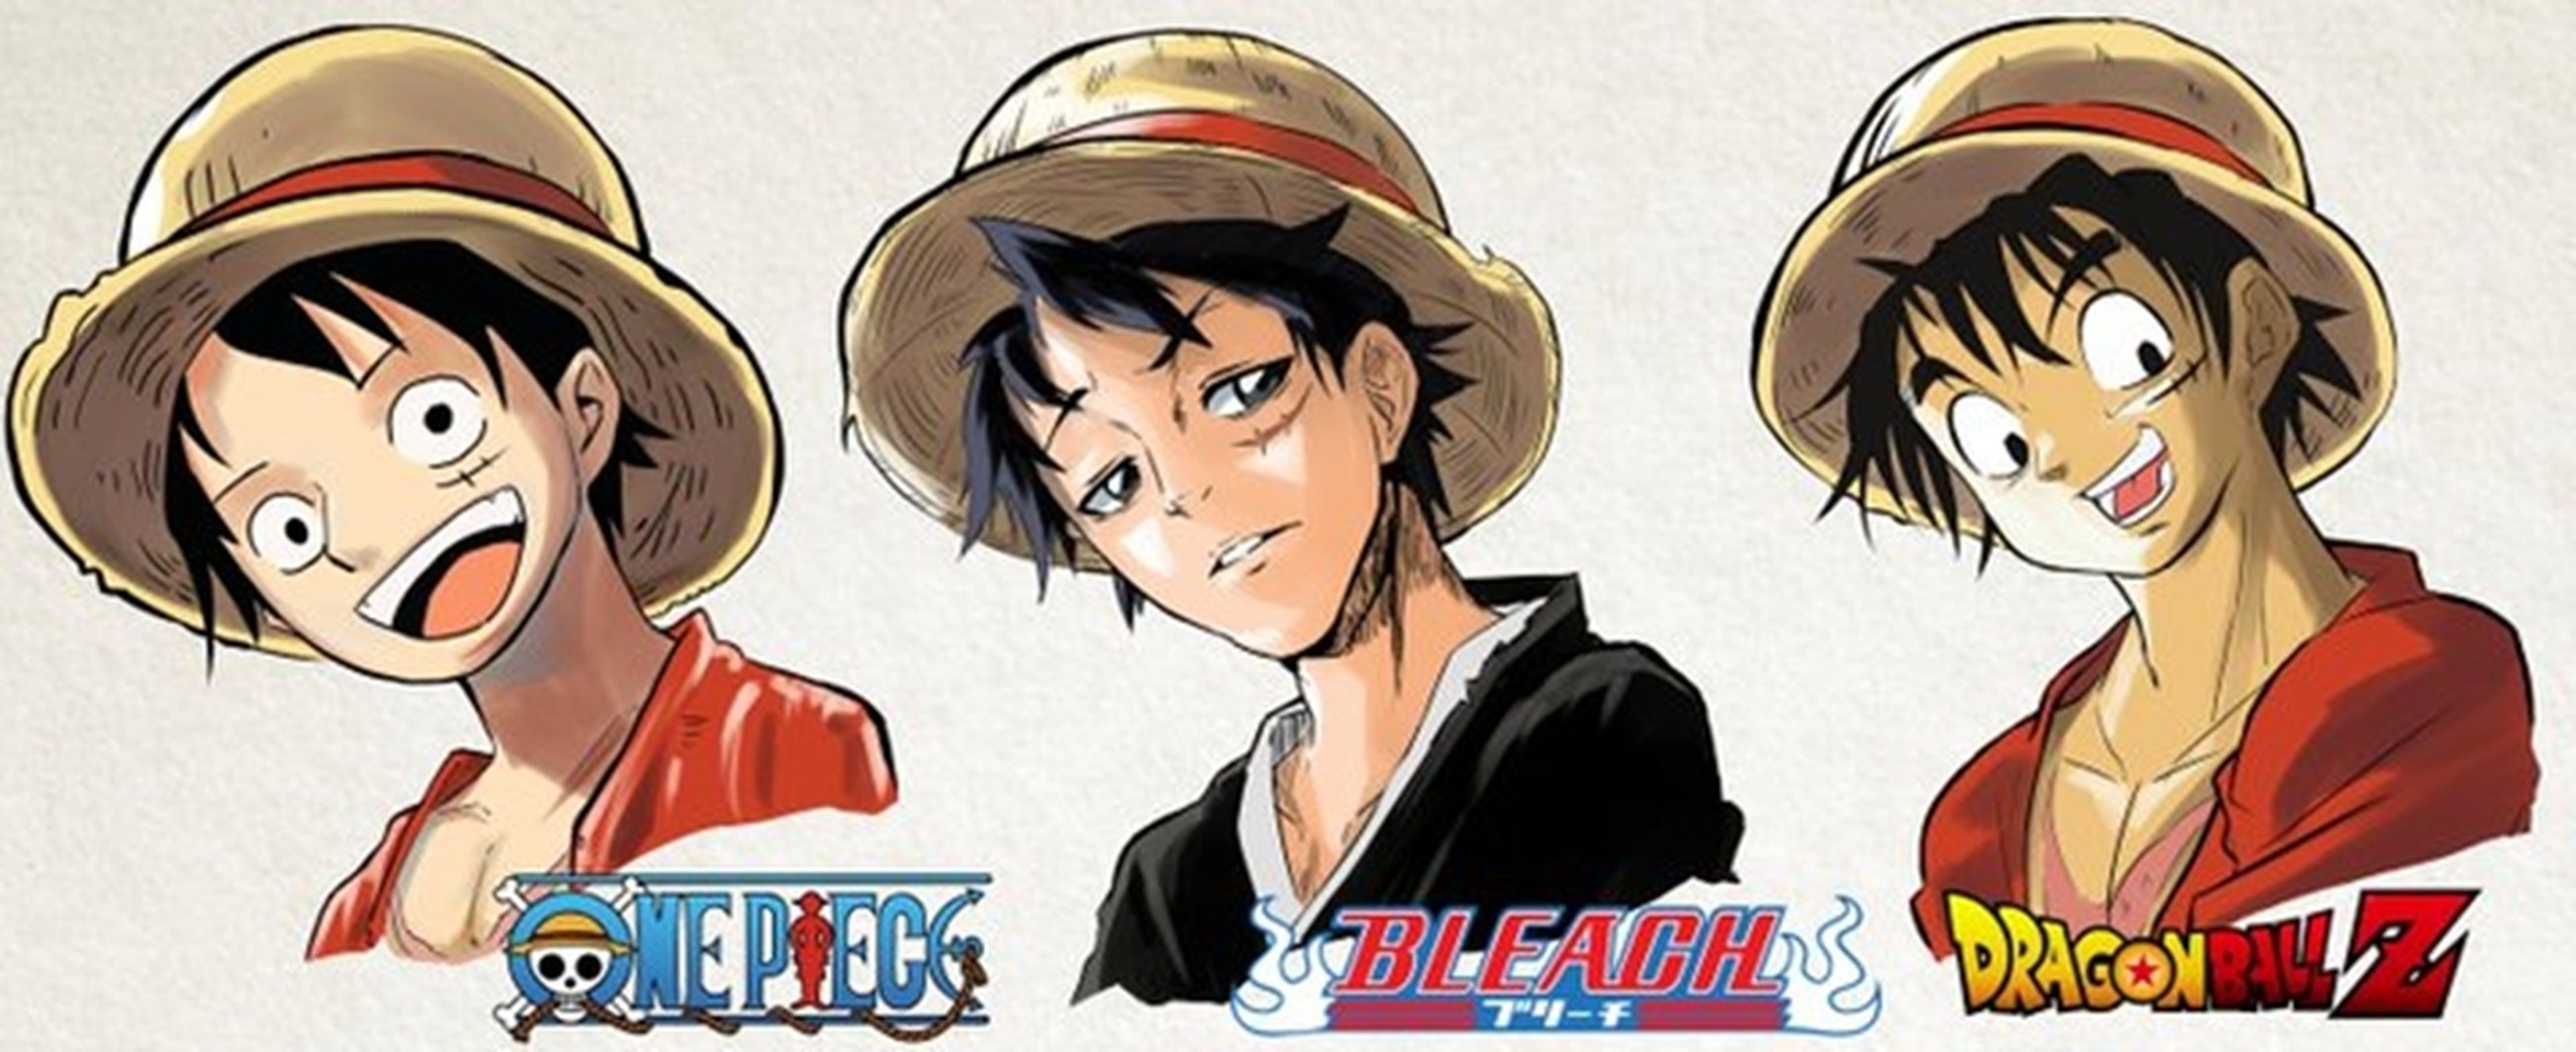 One Piece - Un artista imagina cómo sería Luffy protagonizando otros animes populares